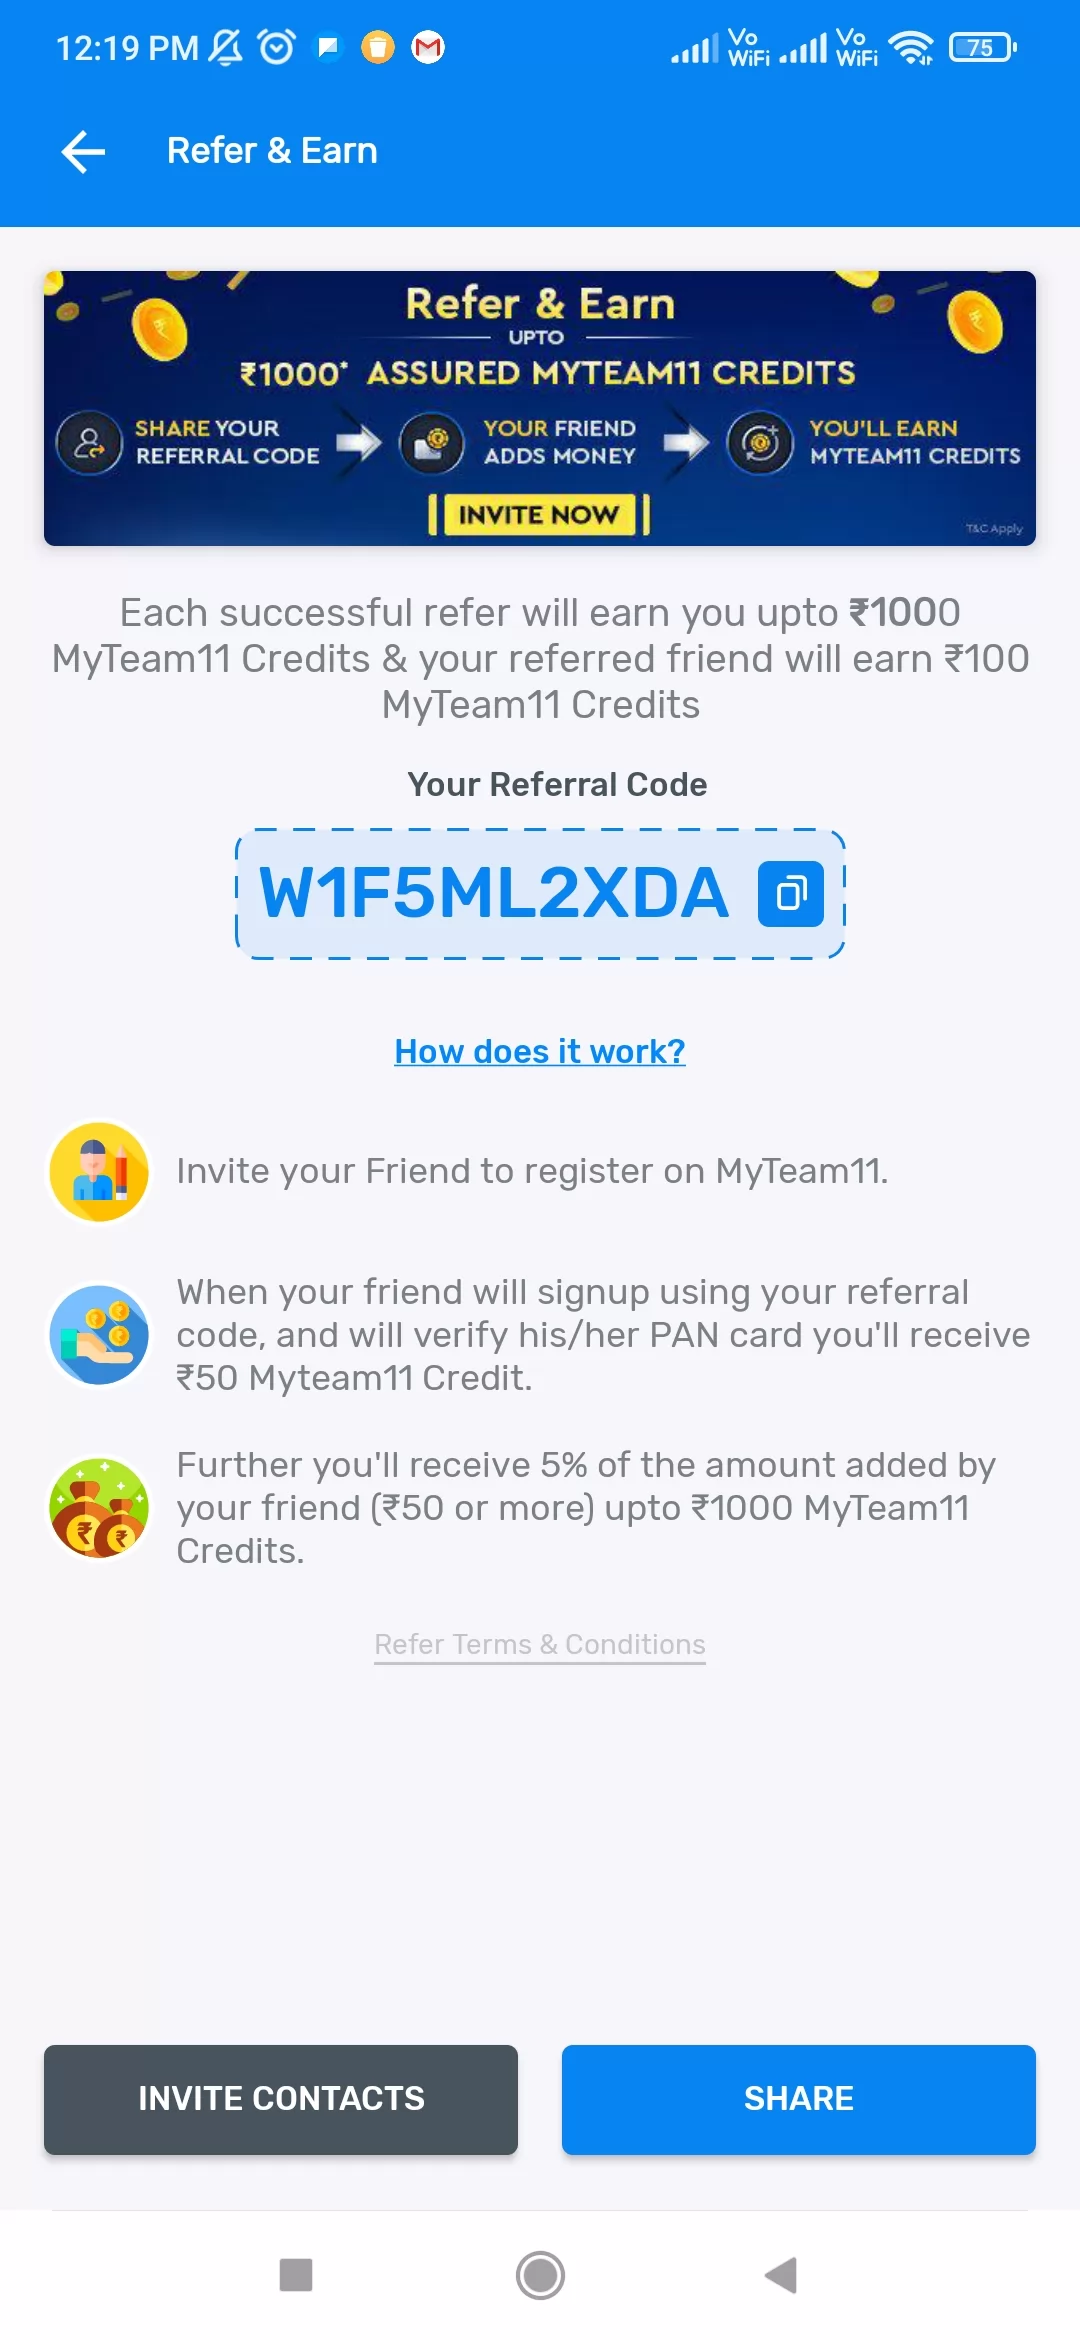 MyTeam11 Refer and Earn offer